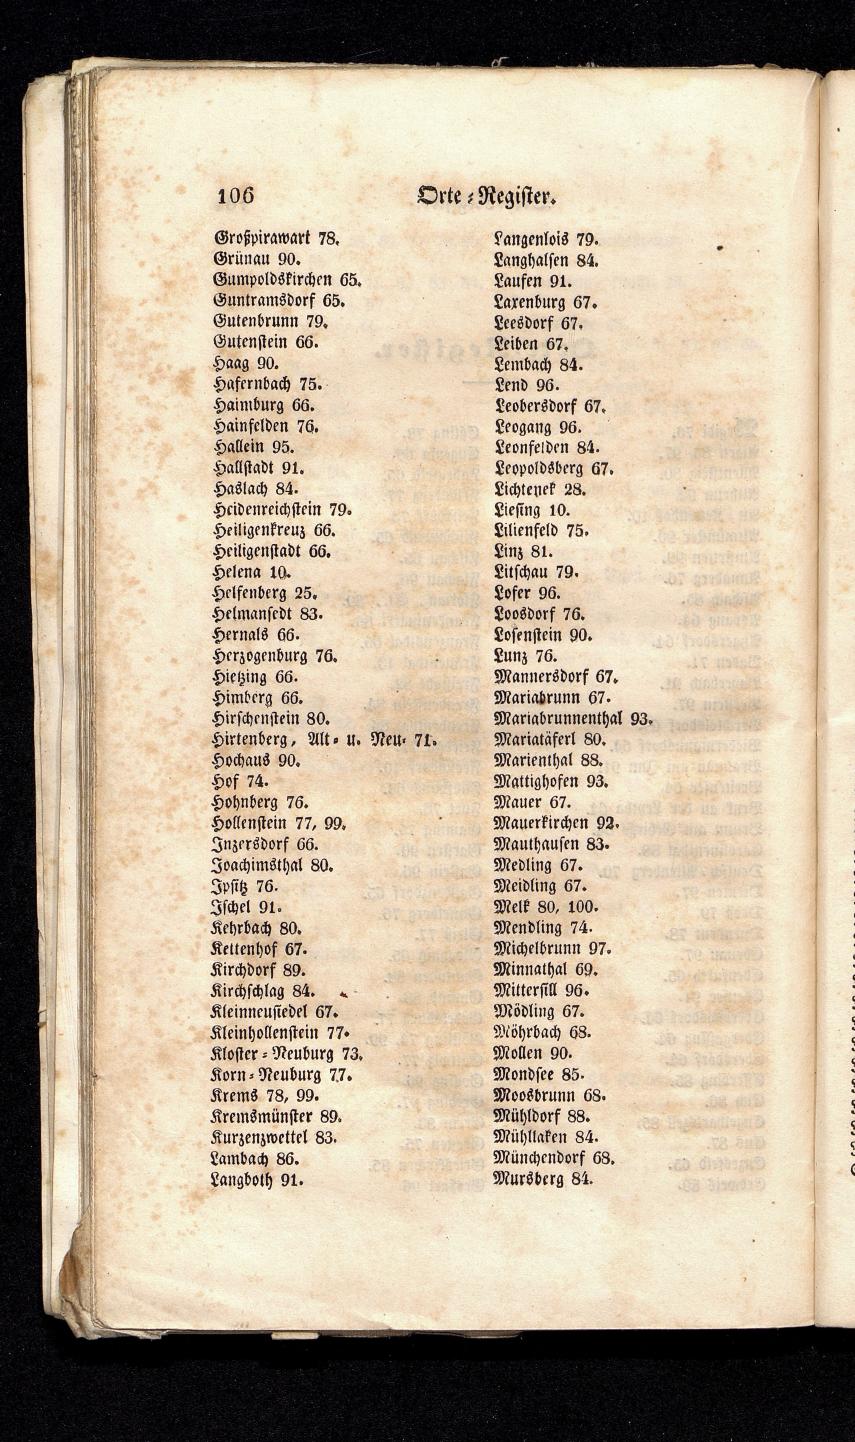 Grosses Adressbuch der Kaufleute. No. 13. Oesterreich ober u. unter der Enns 1844 - Seite 110